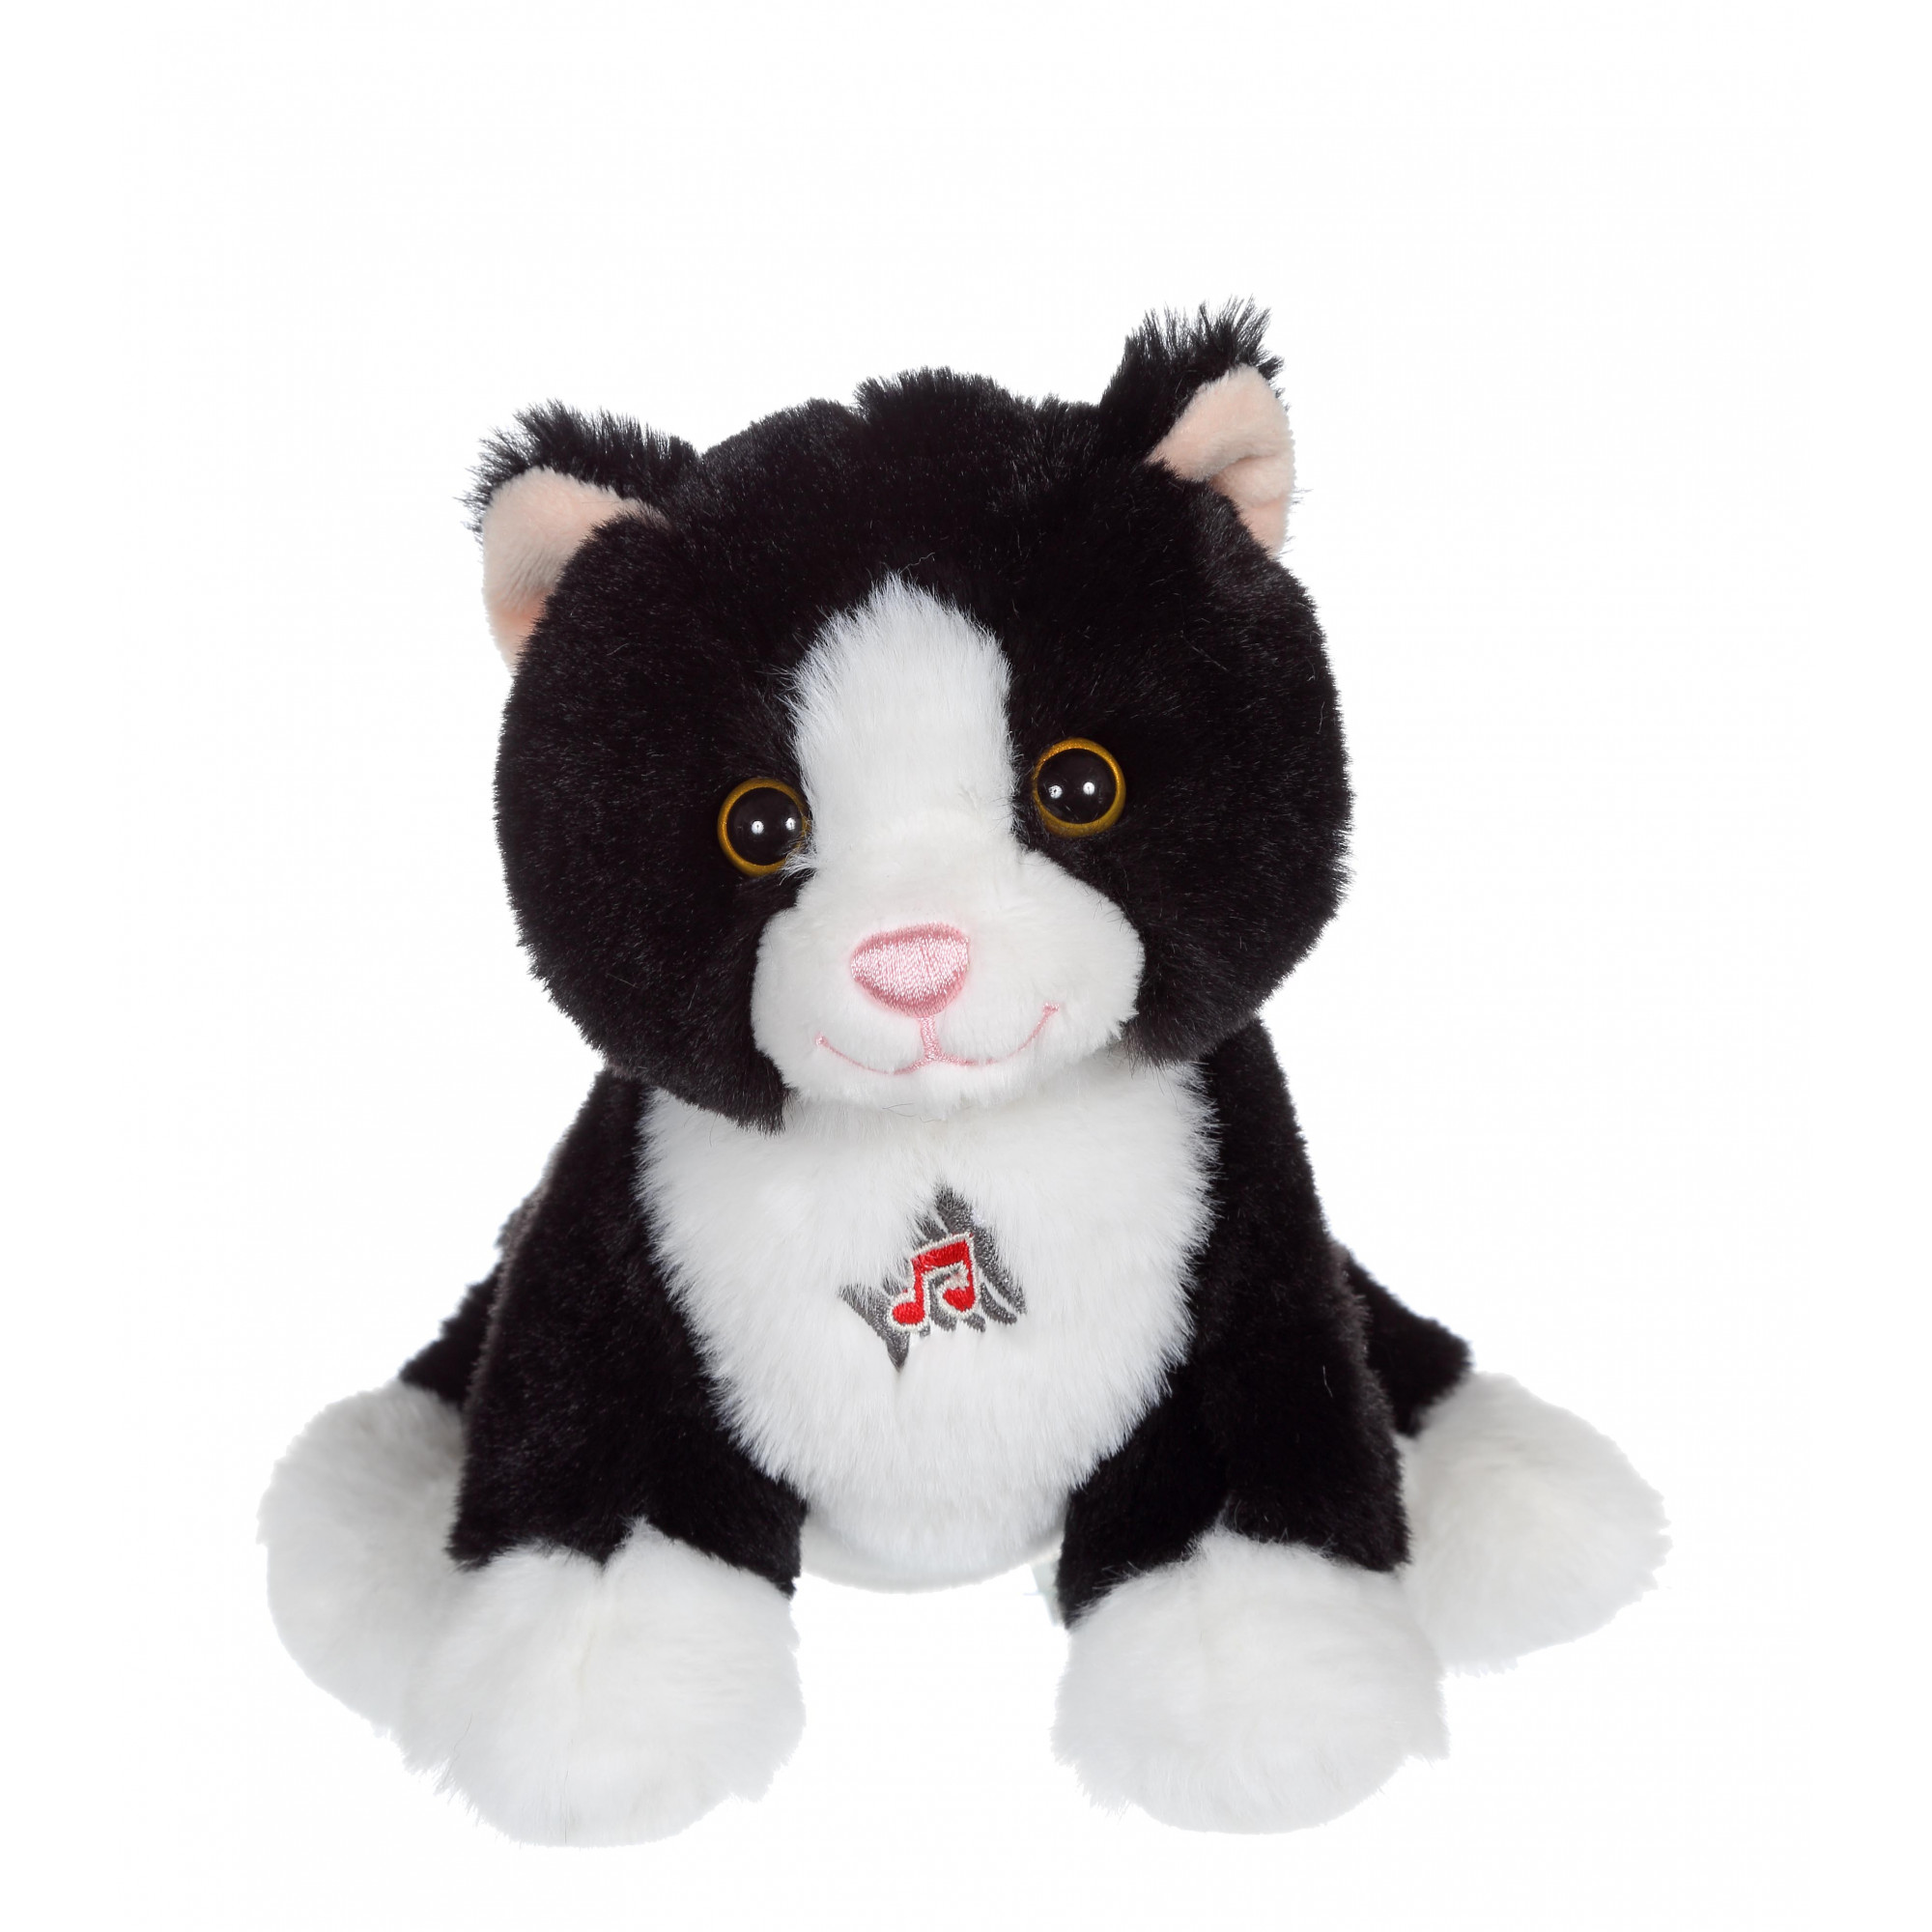 Peluche chat noir et blanc 18 cm sonore